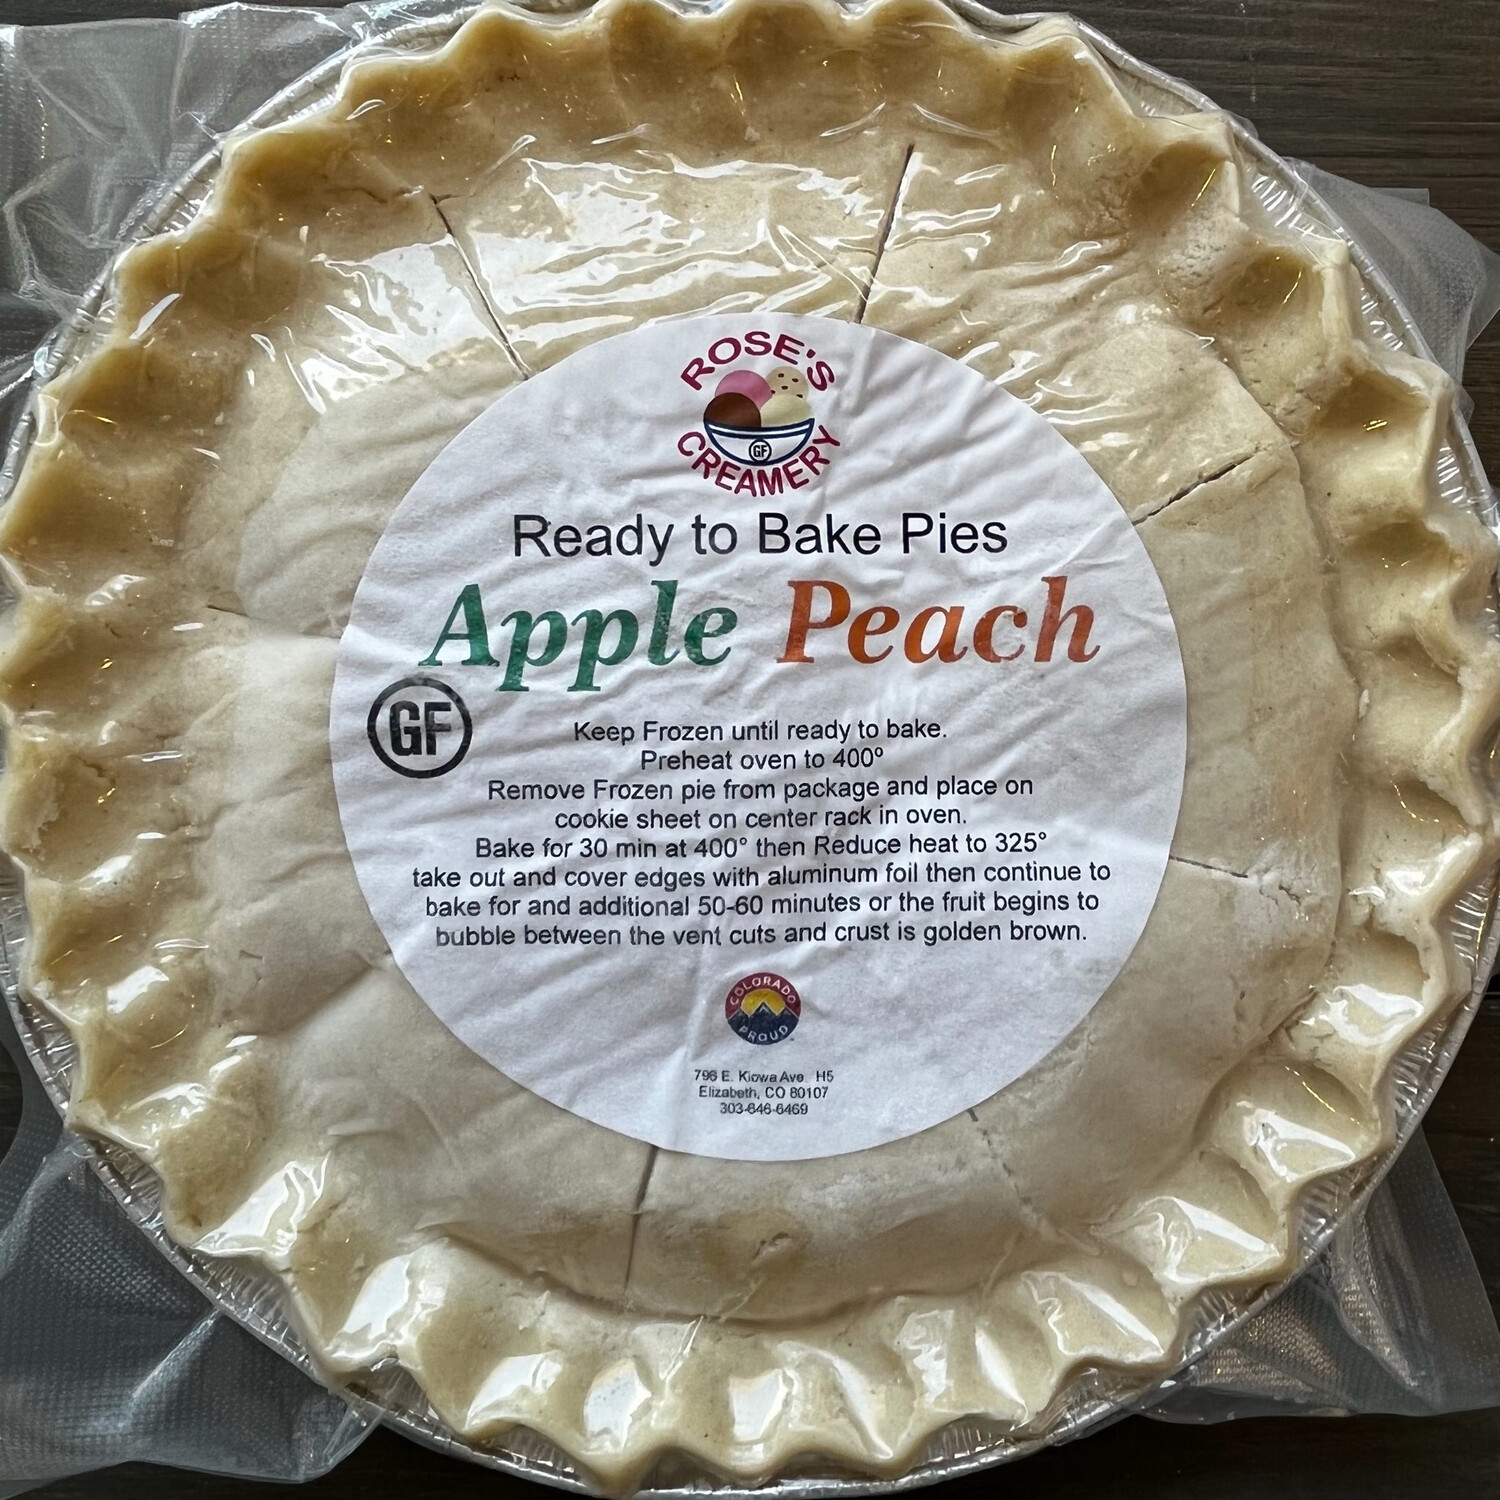 Roses GF Apple Peach Pie